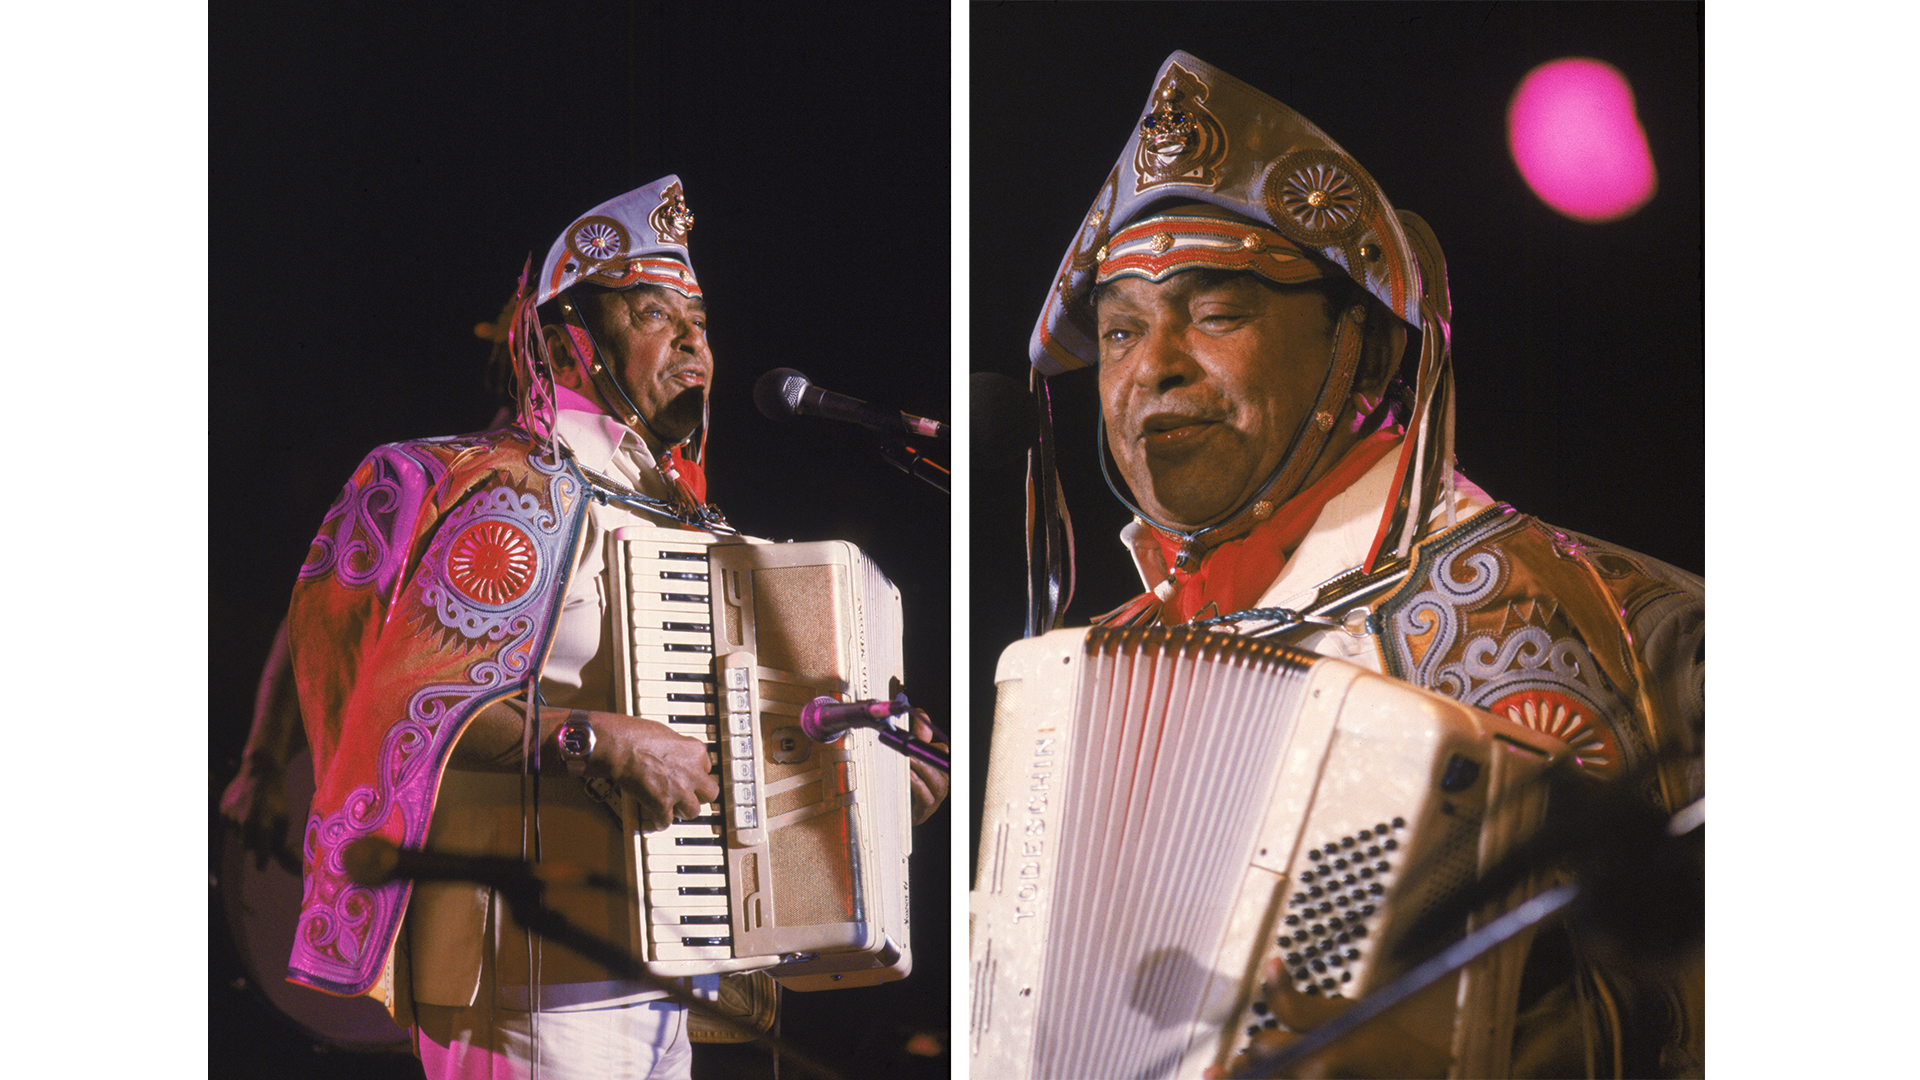 Show de Luiz Gonzaga no Festival de Águas Claras.